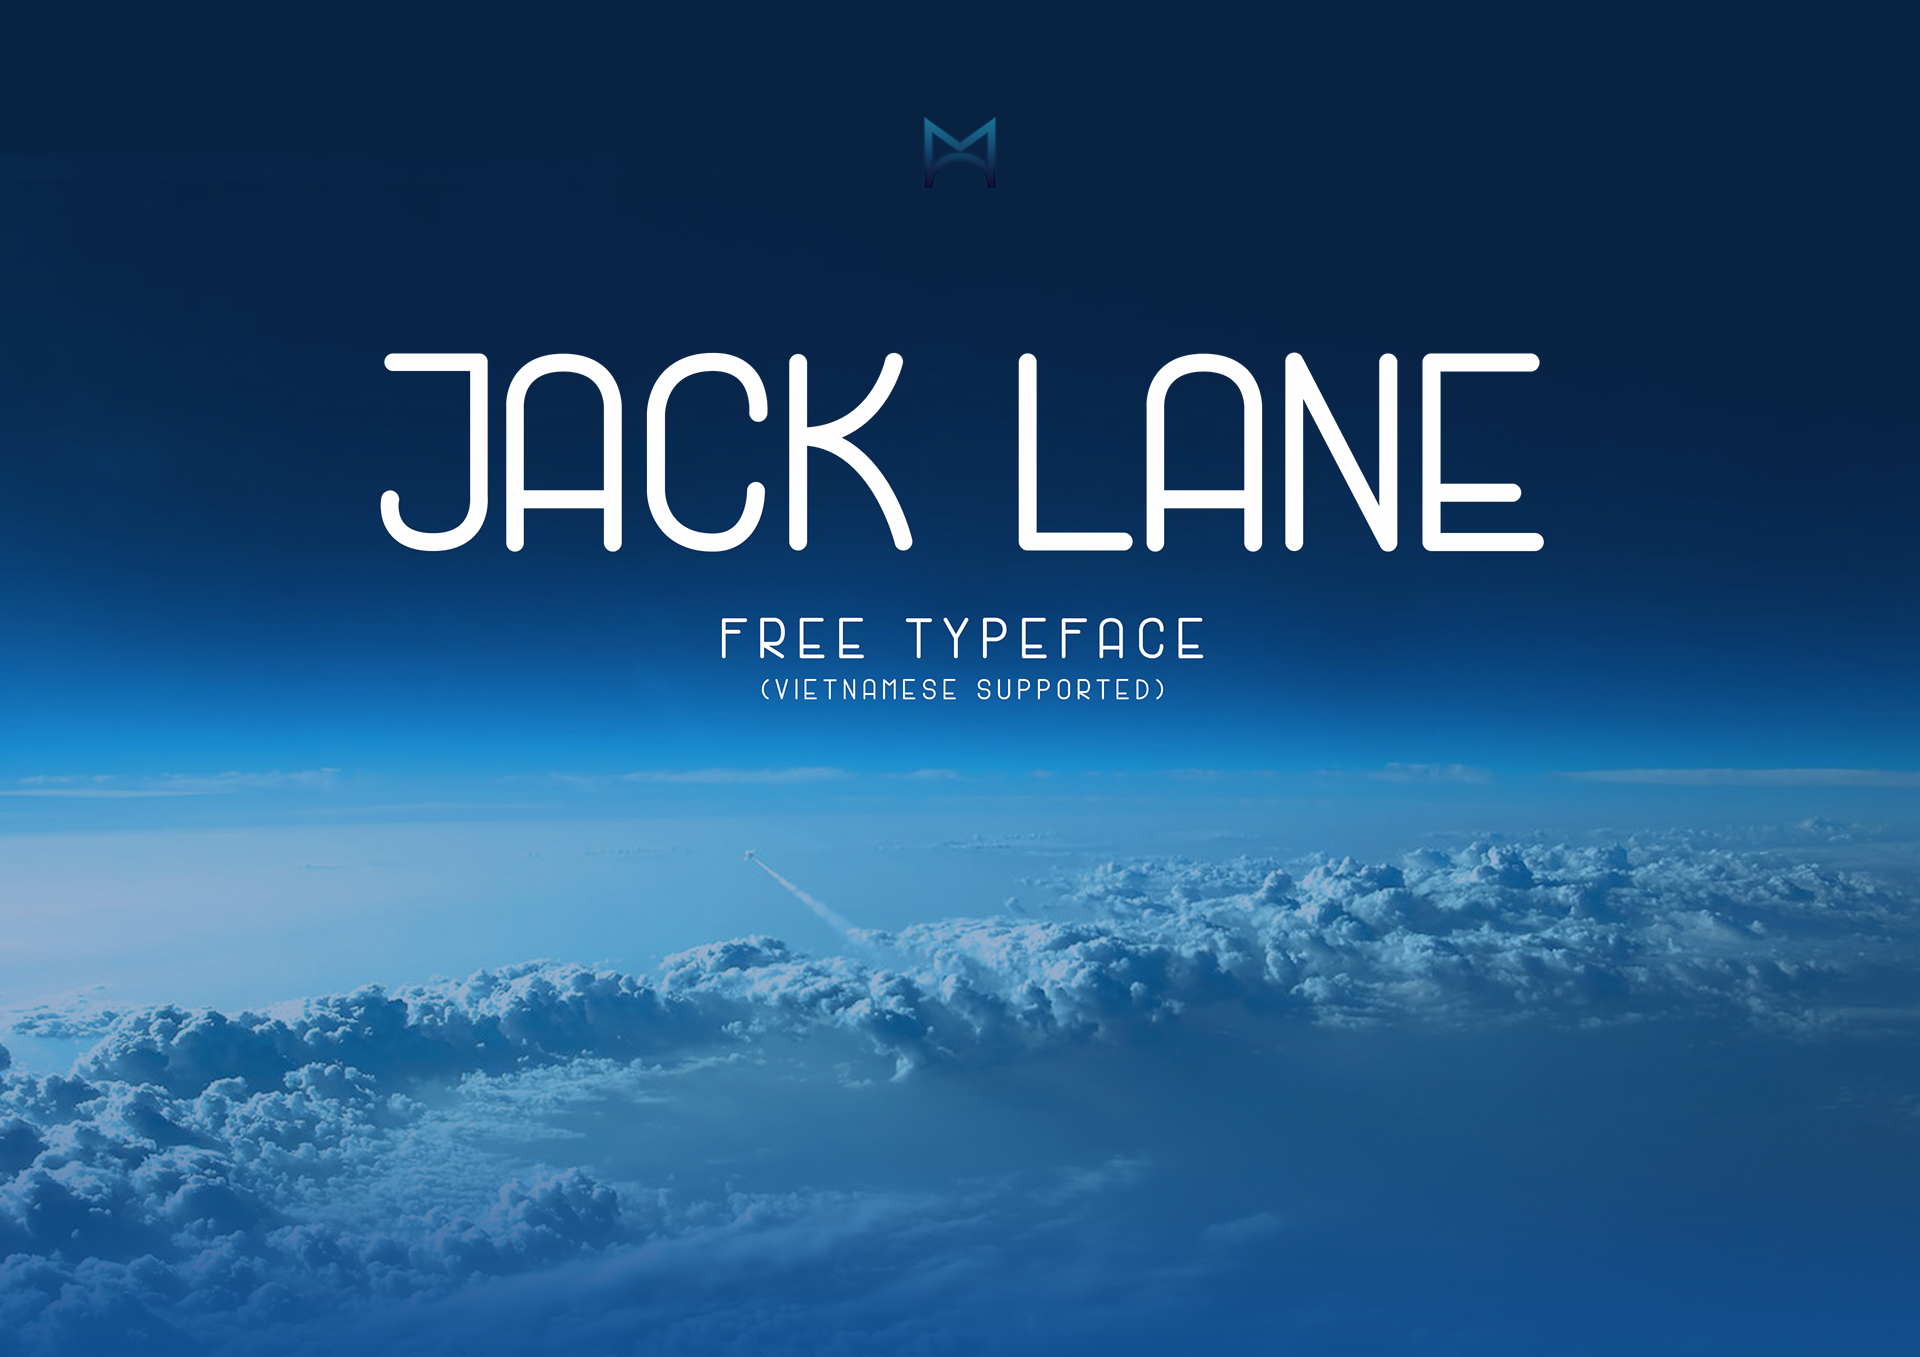 Jack Lane Free Font - sans-serif